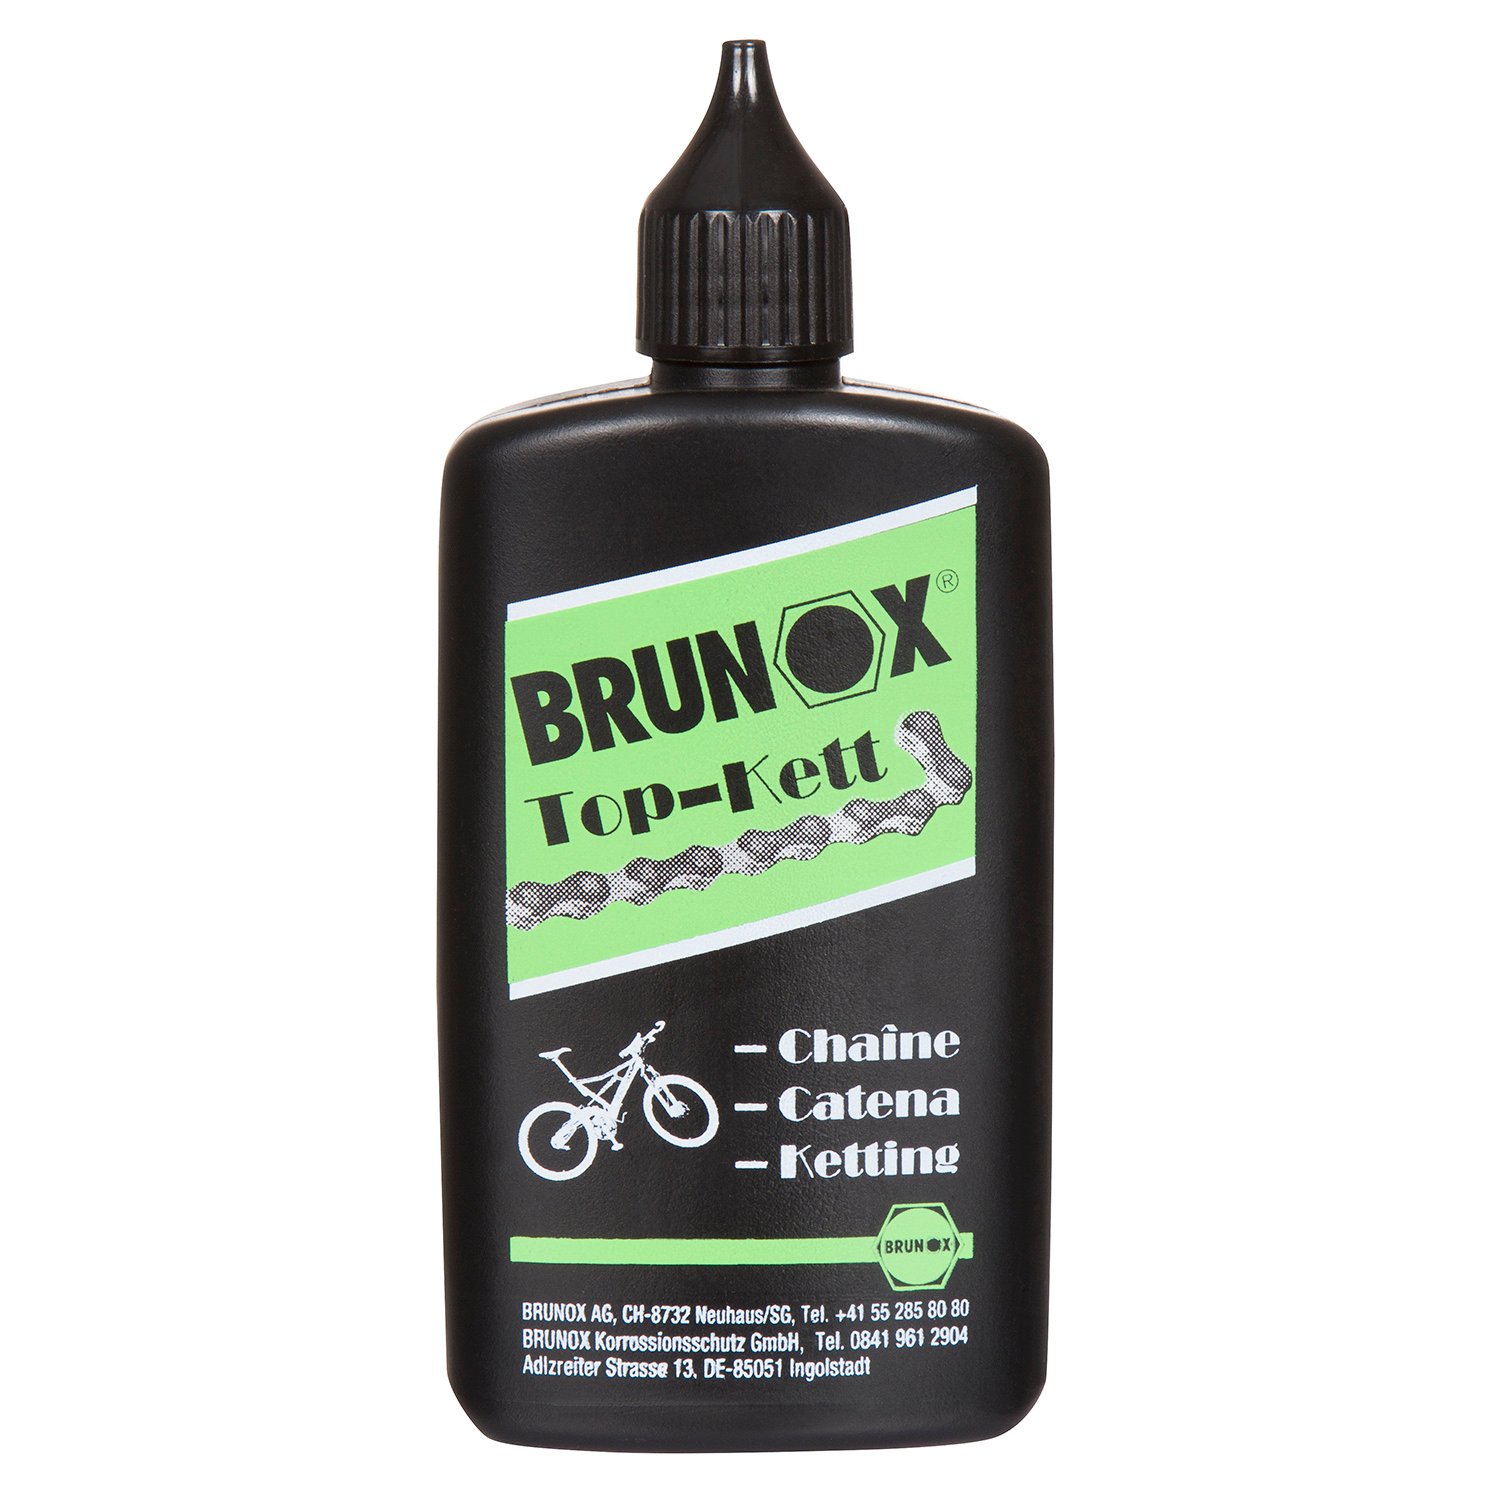 Brunox Lubrificante Spray Catena Top Flacone contagocce, 100 ml